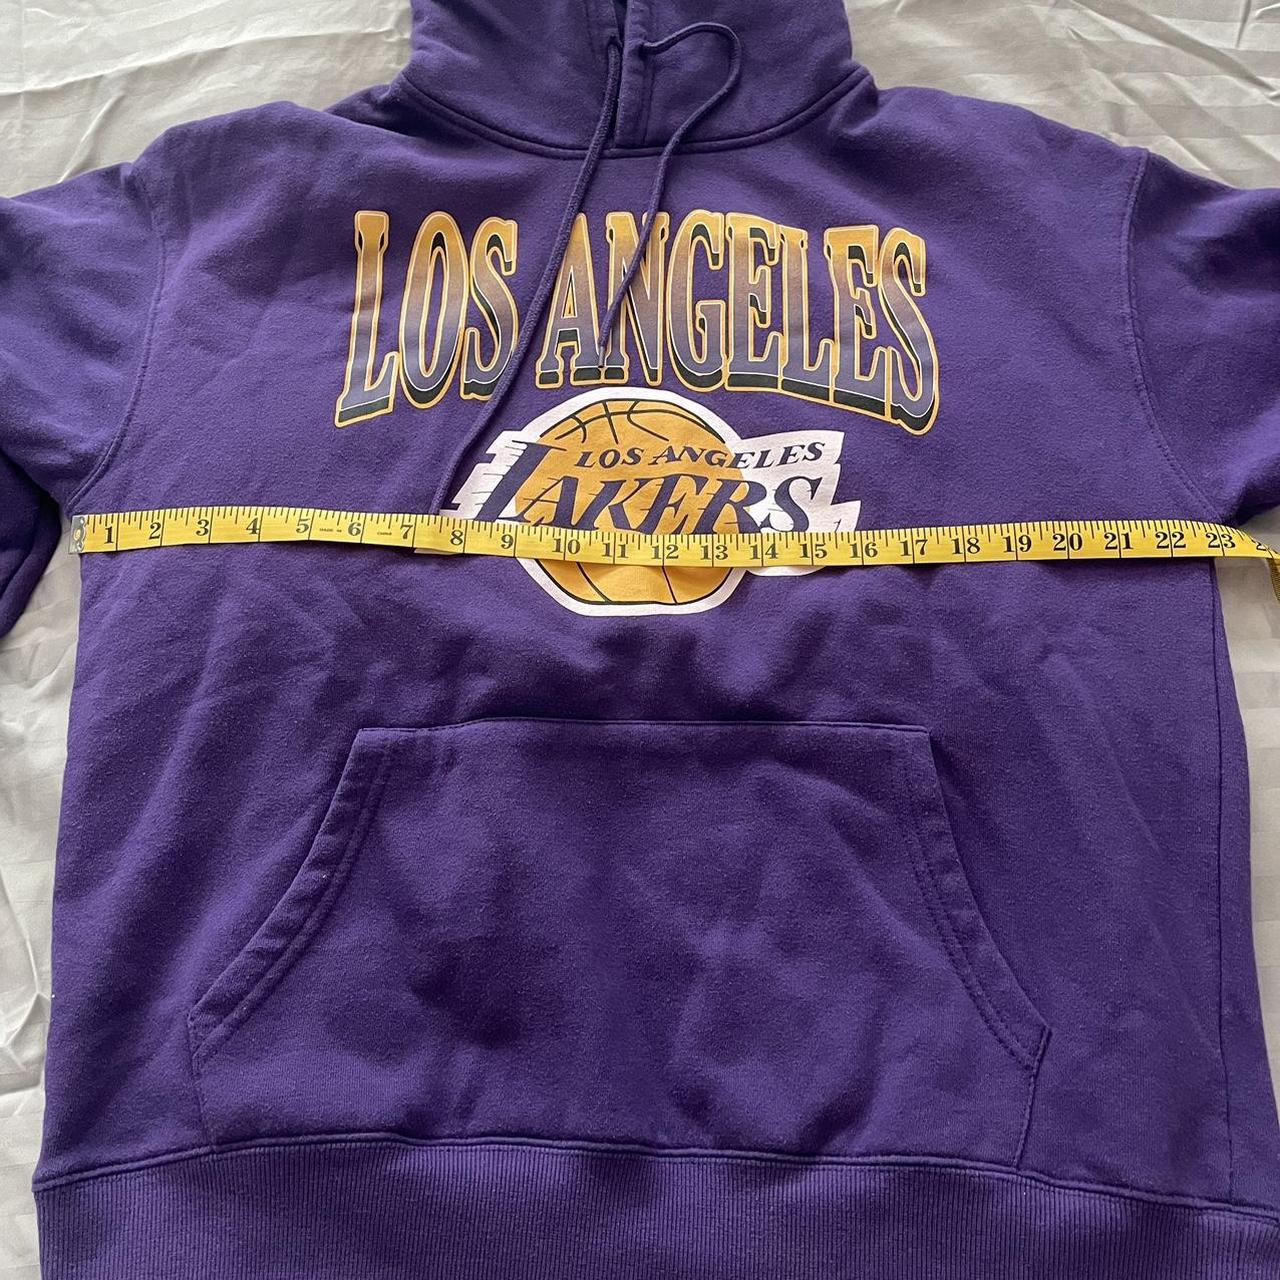 Lakers hoodie #lakers #lakershoodie #hoodie - Depop